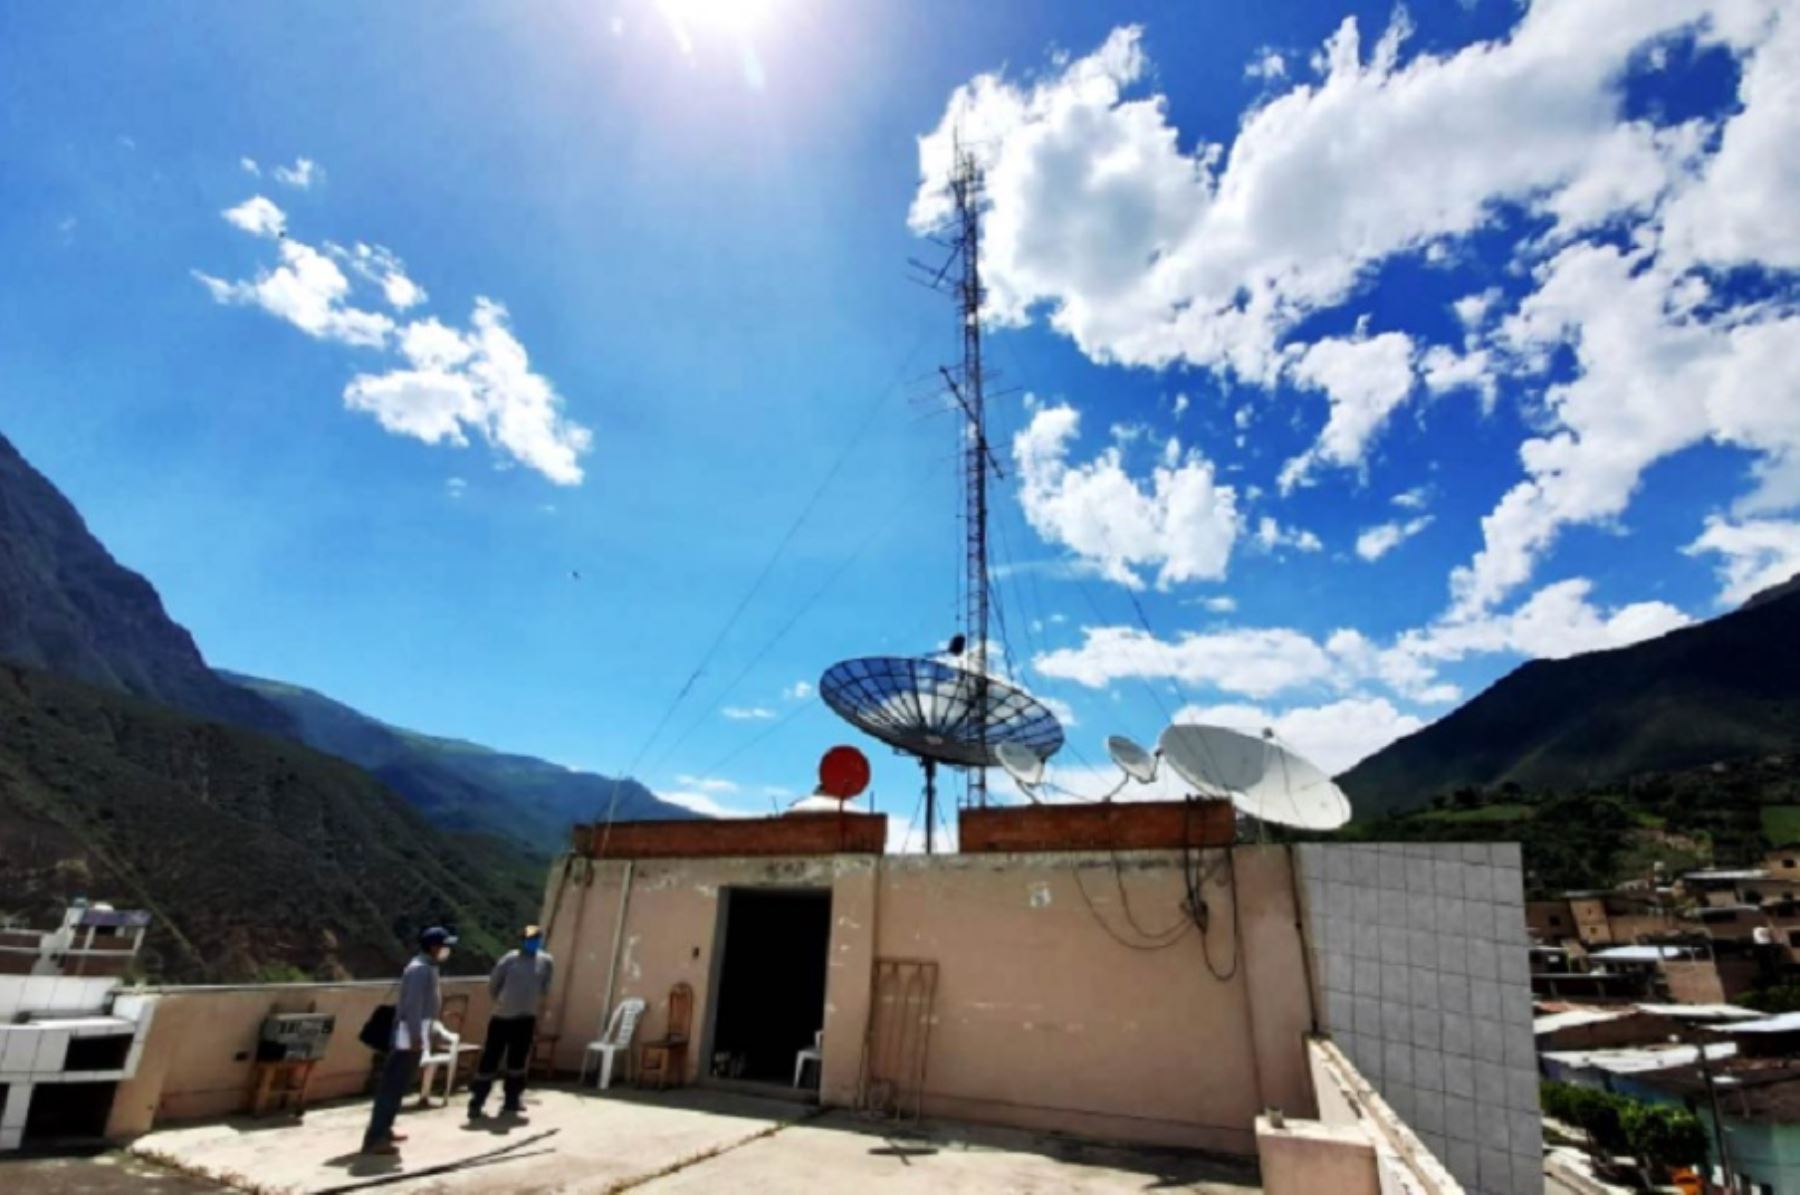 Un total de 105 antenas que transmiten la señal de Radio Nacional y Tv Perú fueron reparadas por una brigada de ingenieros y técnicos contratados por la Dirección Regional de Transportes y Comunicaciones (DRTC) de Cajamarca, en beneficio de más de 35,000 pobladores de comunidades rurales.